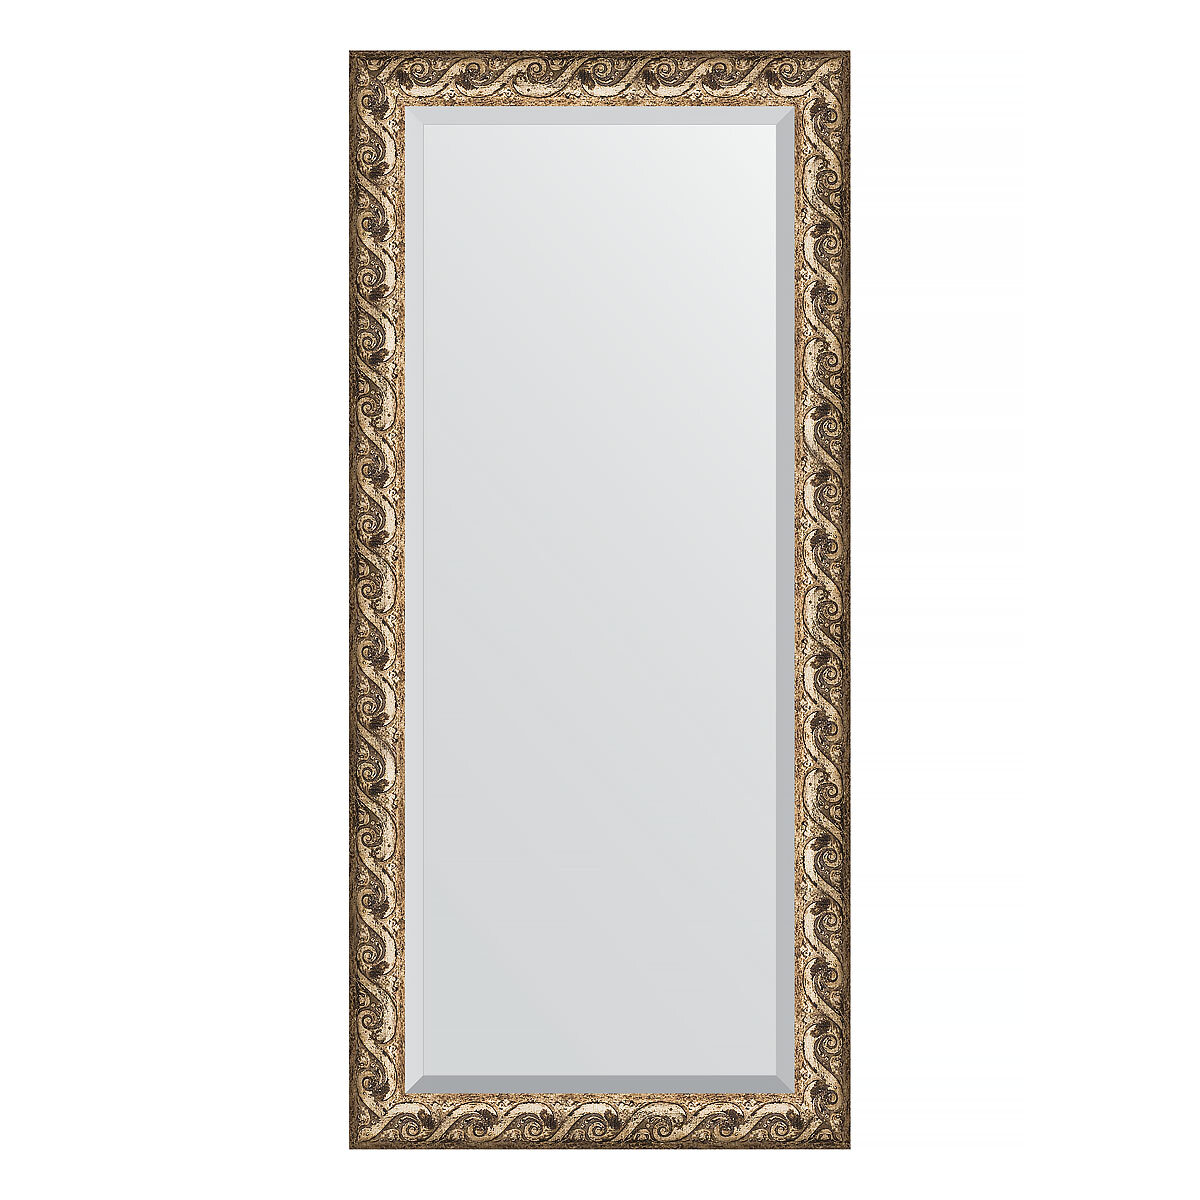 Зеркало настенное с фацетом EVOFORM в багетной раме фреска, 76х166 см, для гостиной, прихожей, кабинета, спальни и ванной комнаты, BY 1309